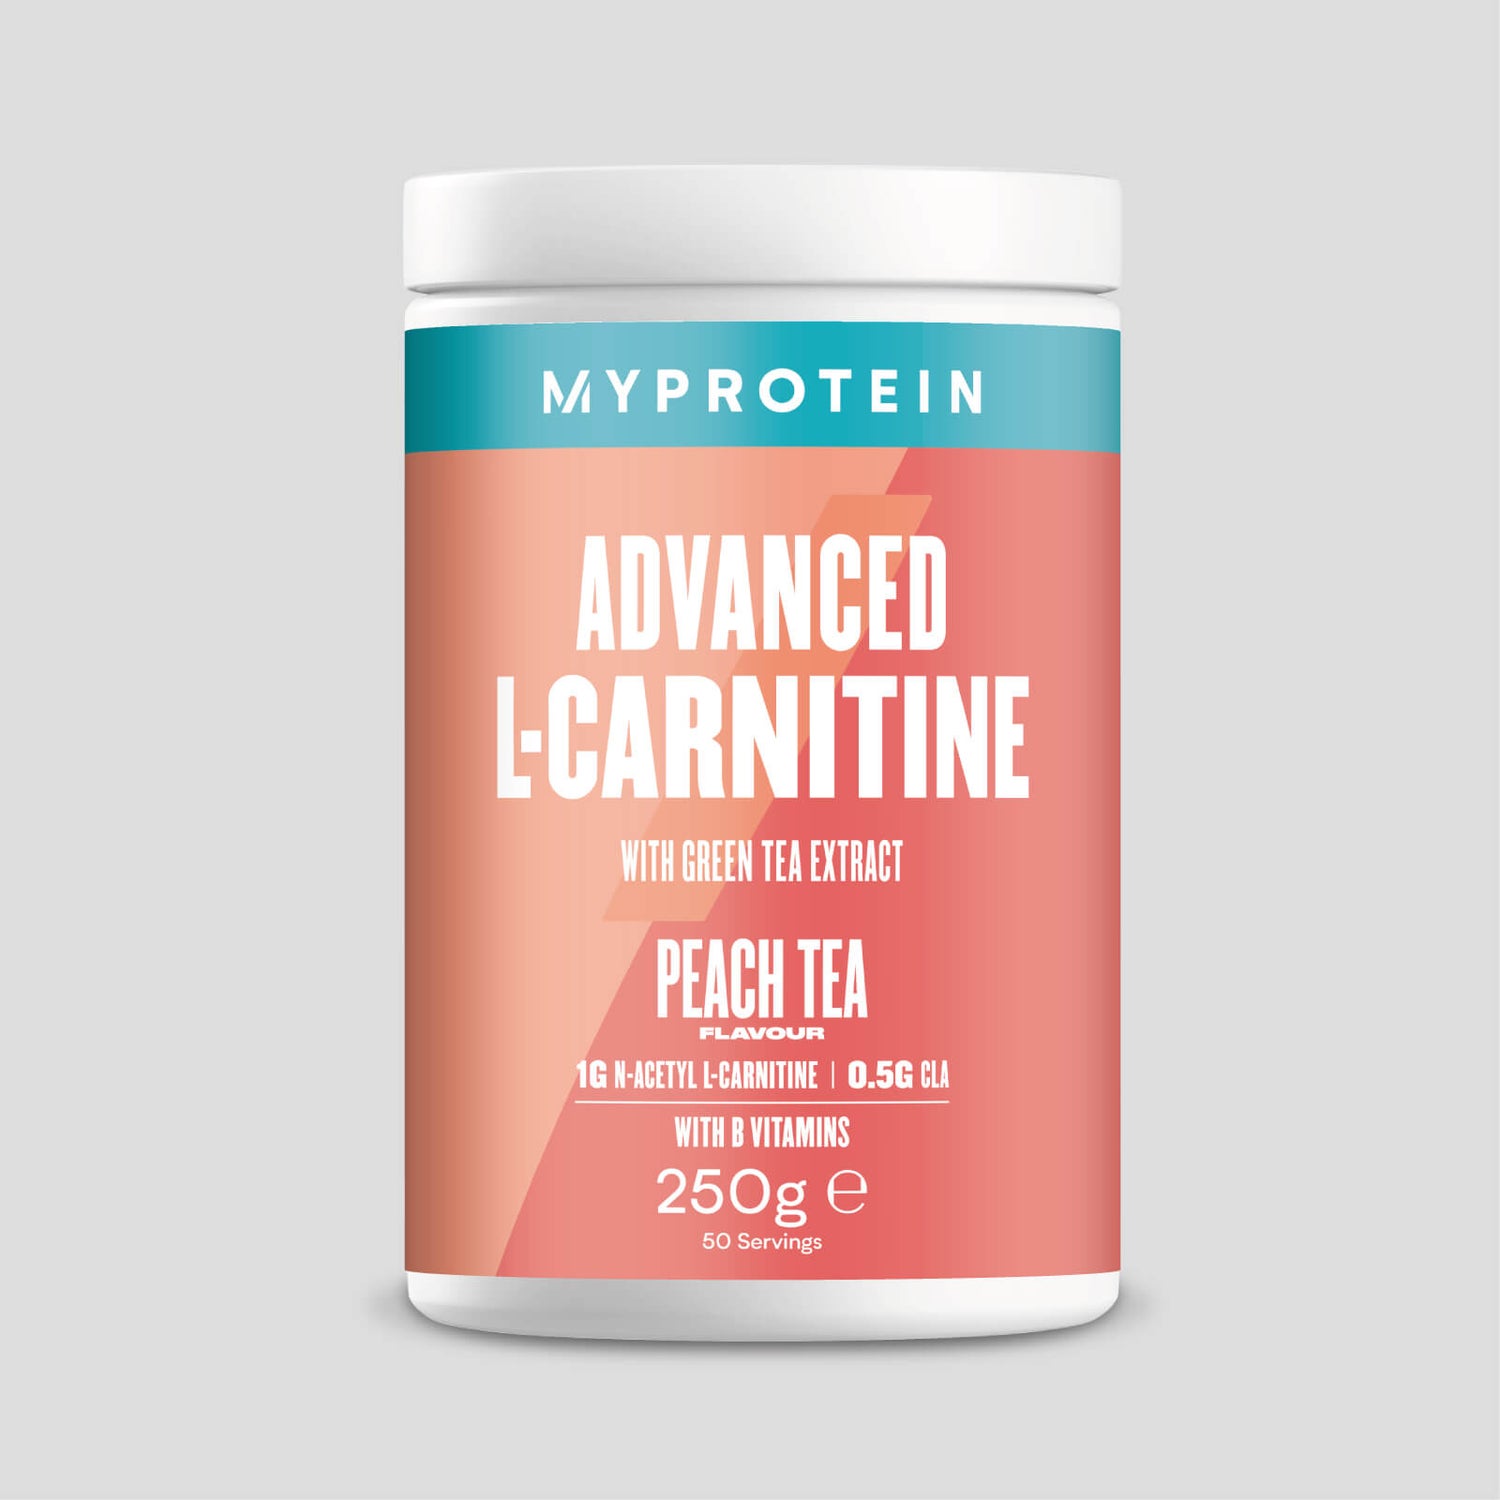 Myprotein Advanced Carnitine - 50servings - Peach Tea